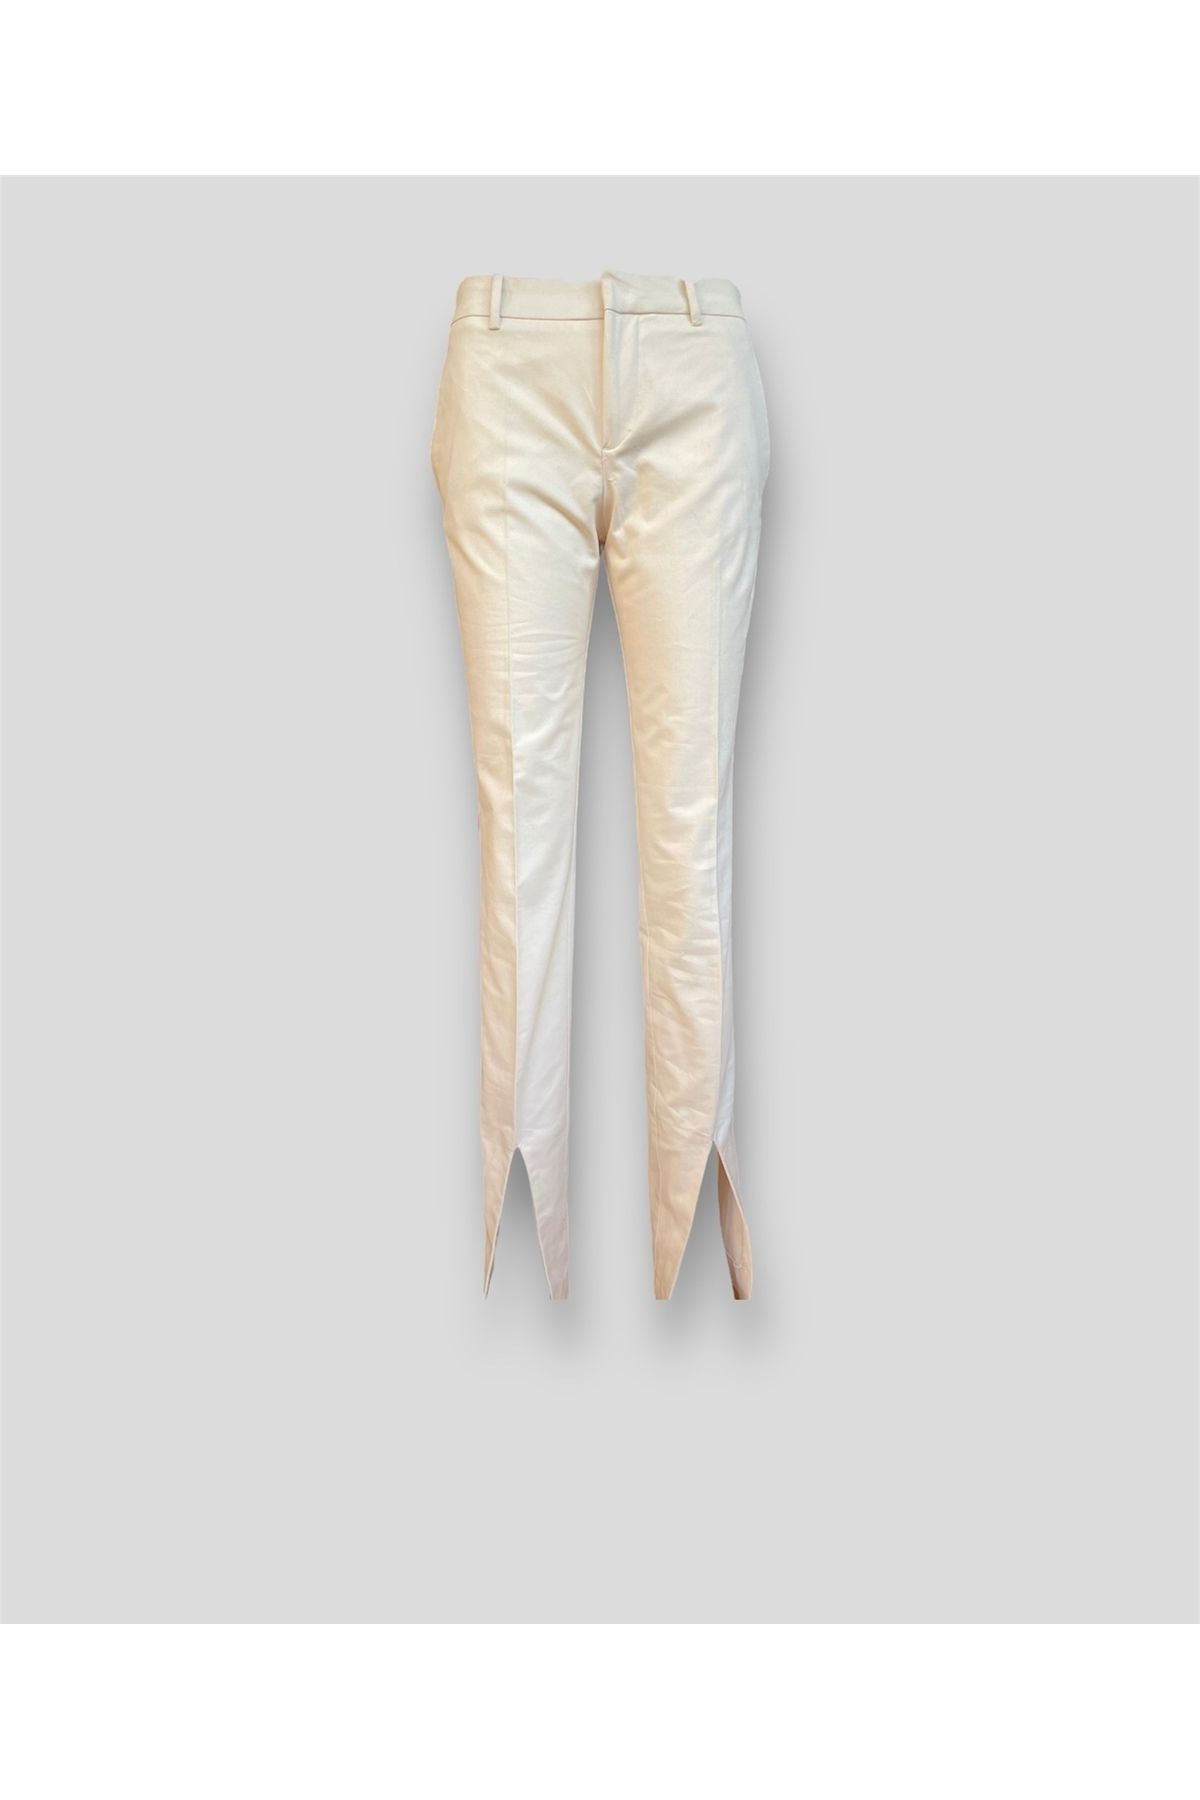 MANGO Kırık Beyaz Paçaları Yırtmaçlı Pantolon